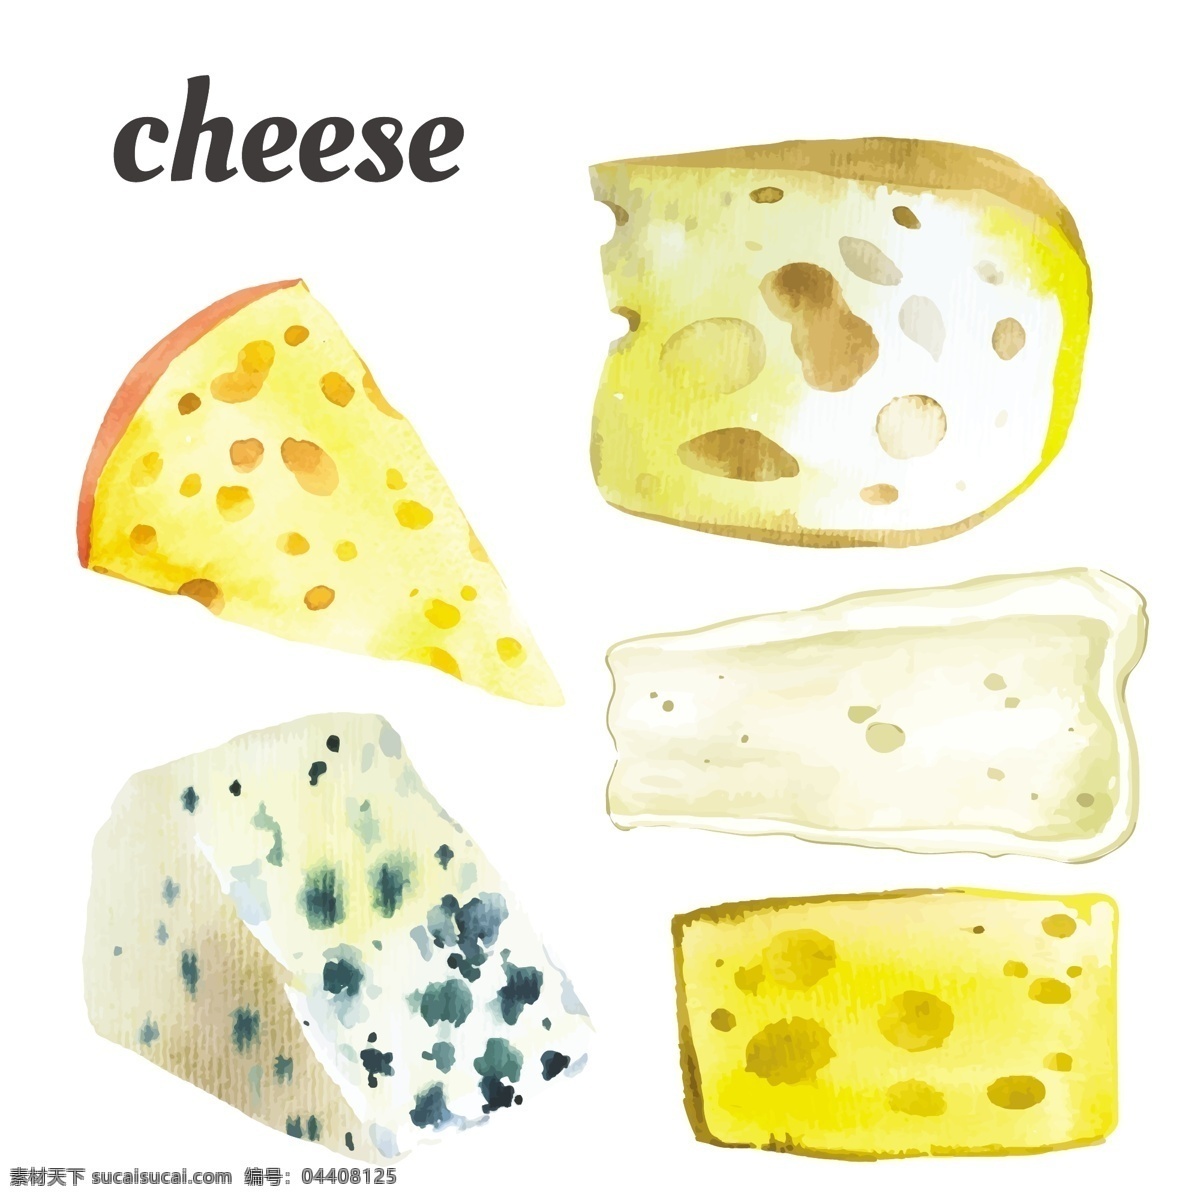 各种斑点奶酪 设计素材 黄色 食物 奶酪效果图 矢量素材 矢量图 设计元素 奶油